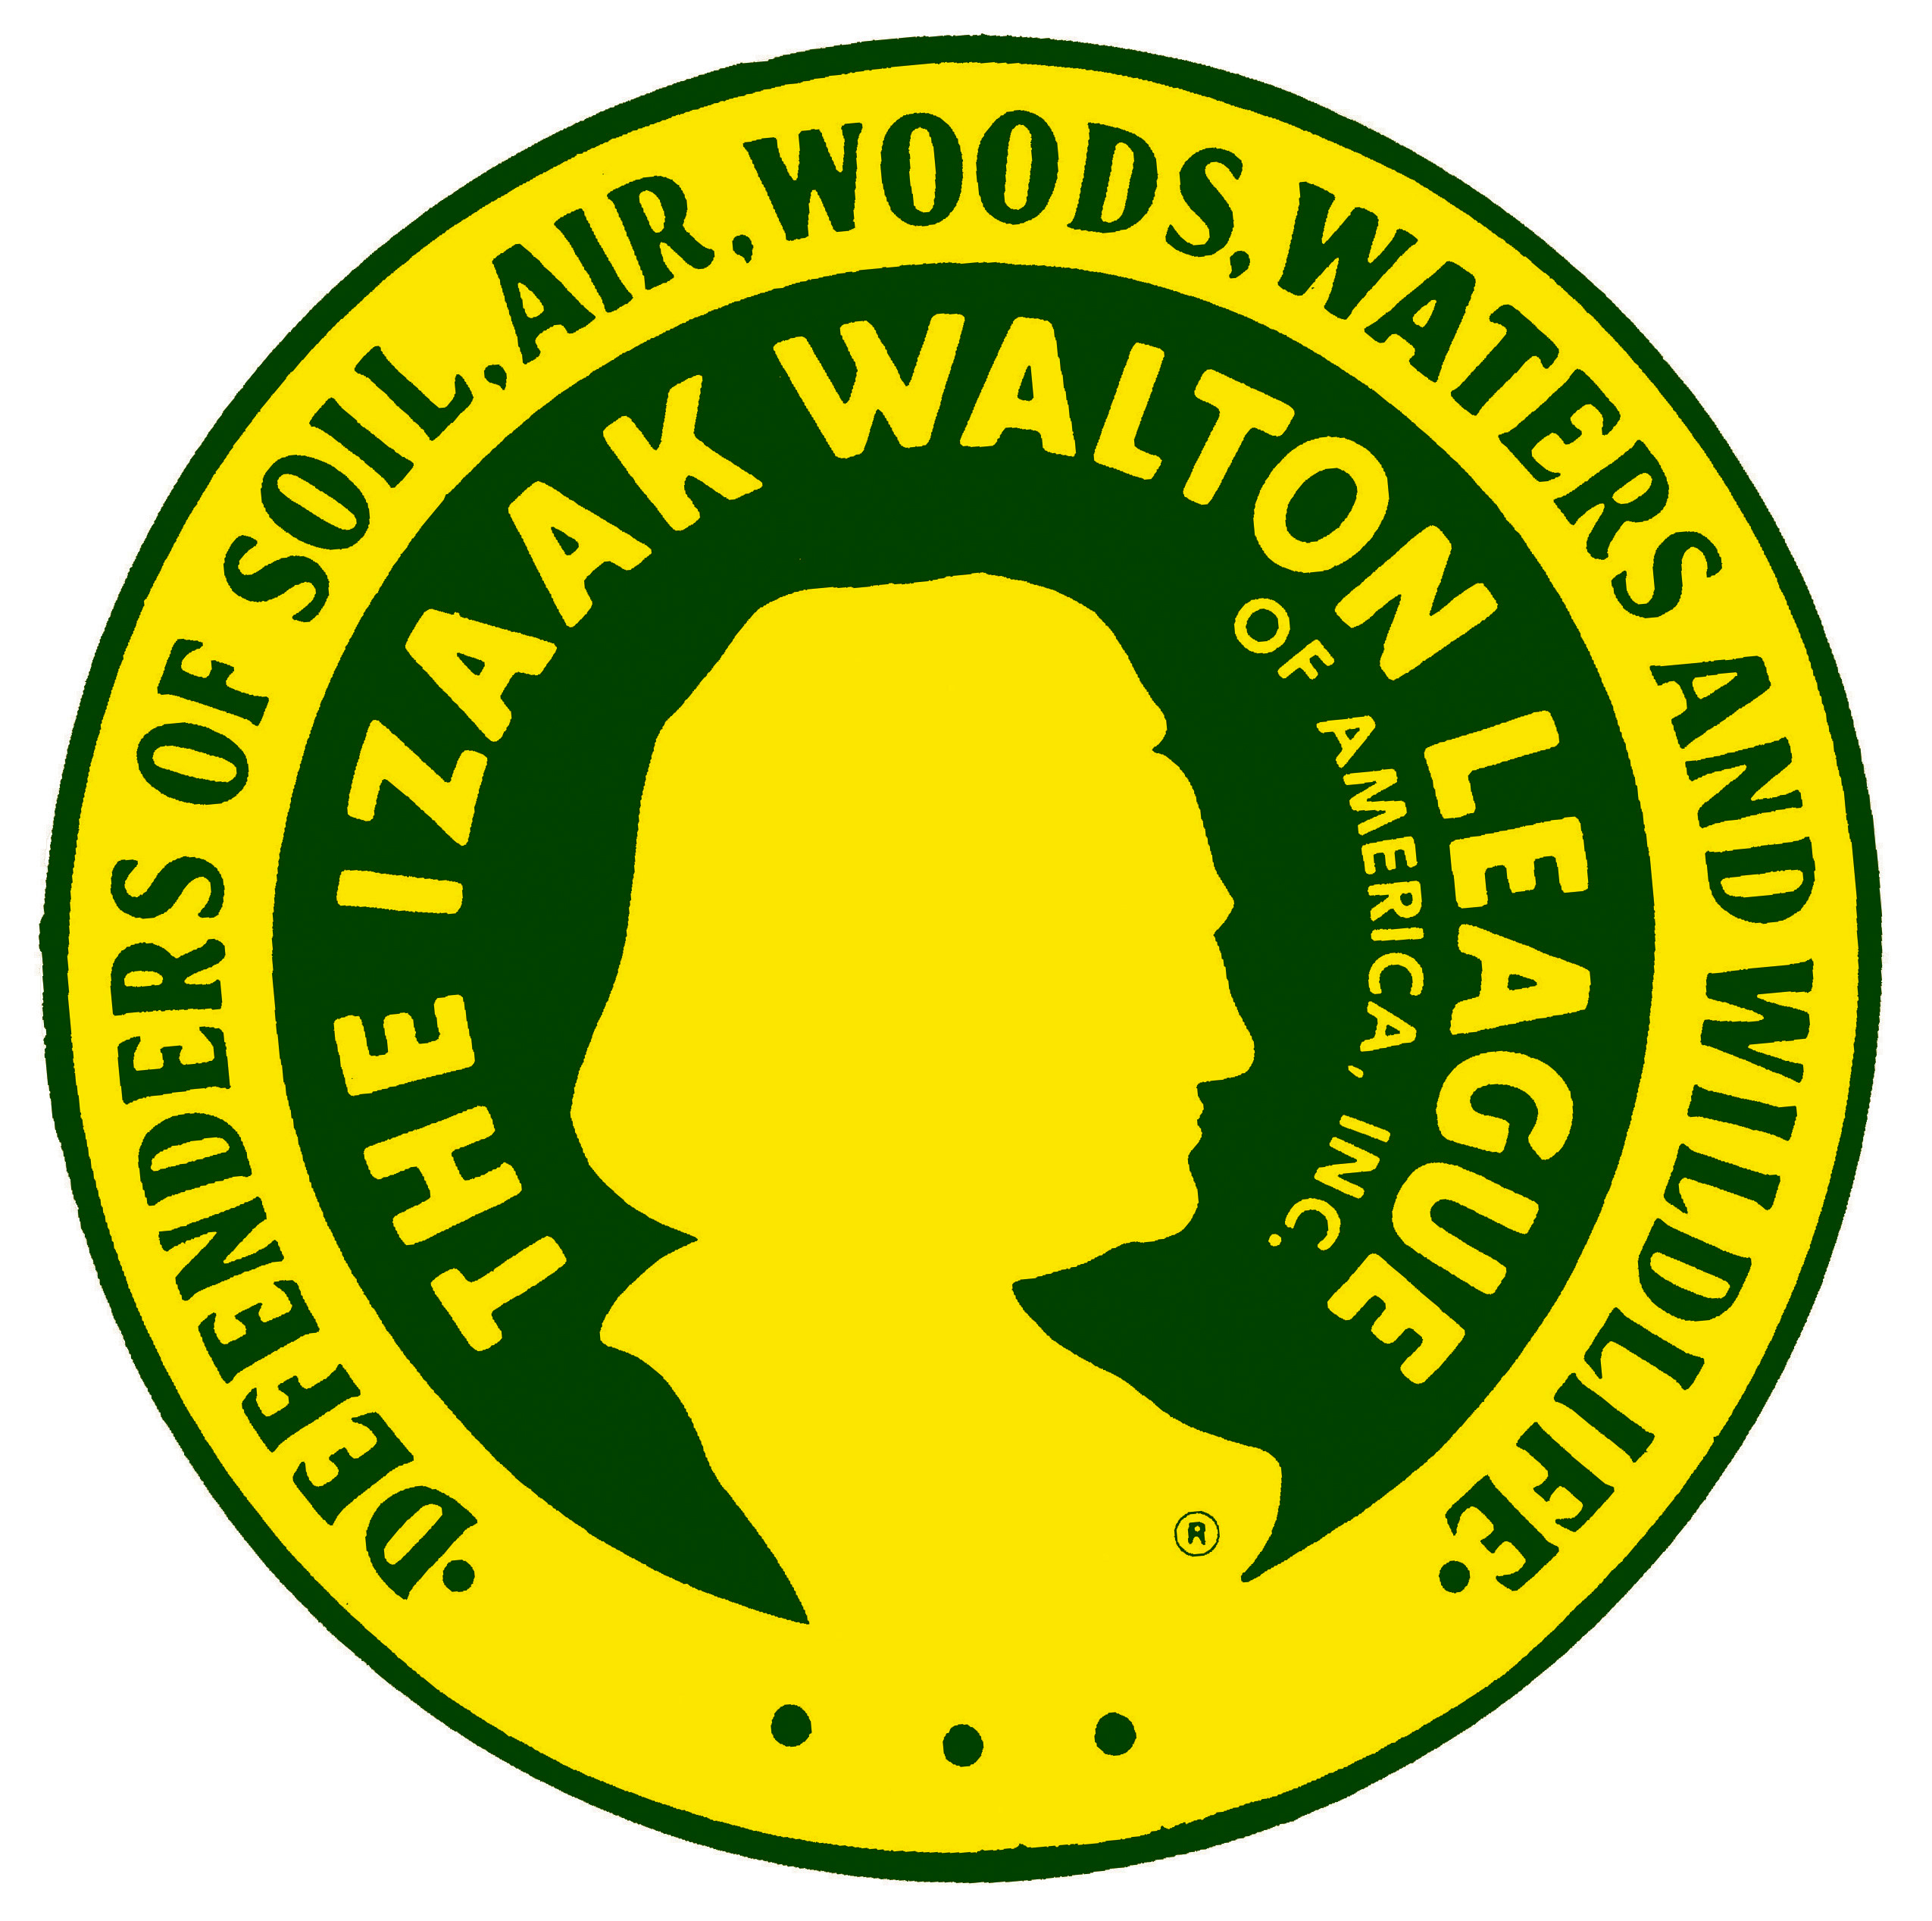 Izaak Walton League of America Logo